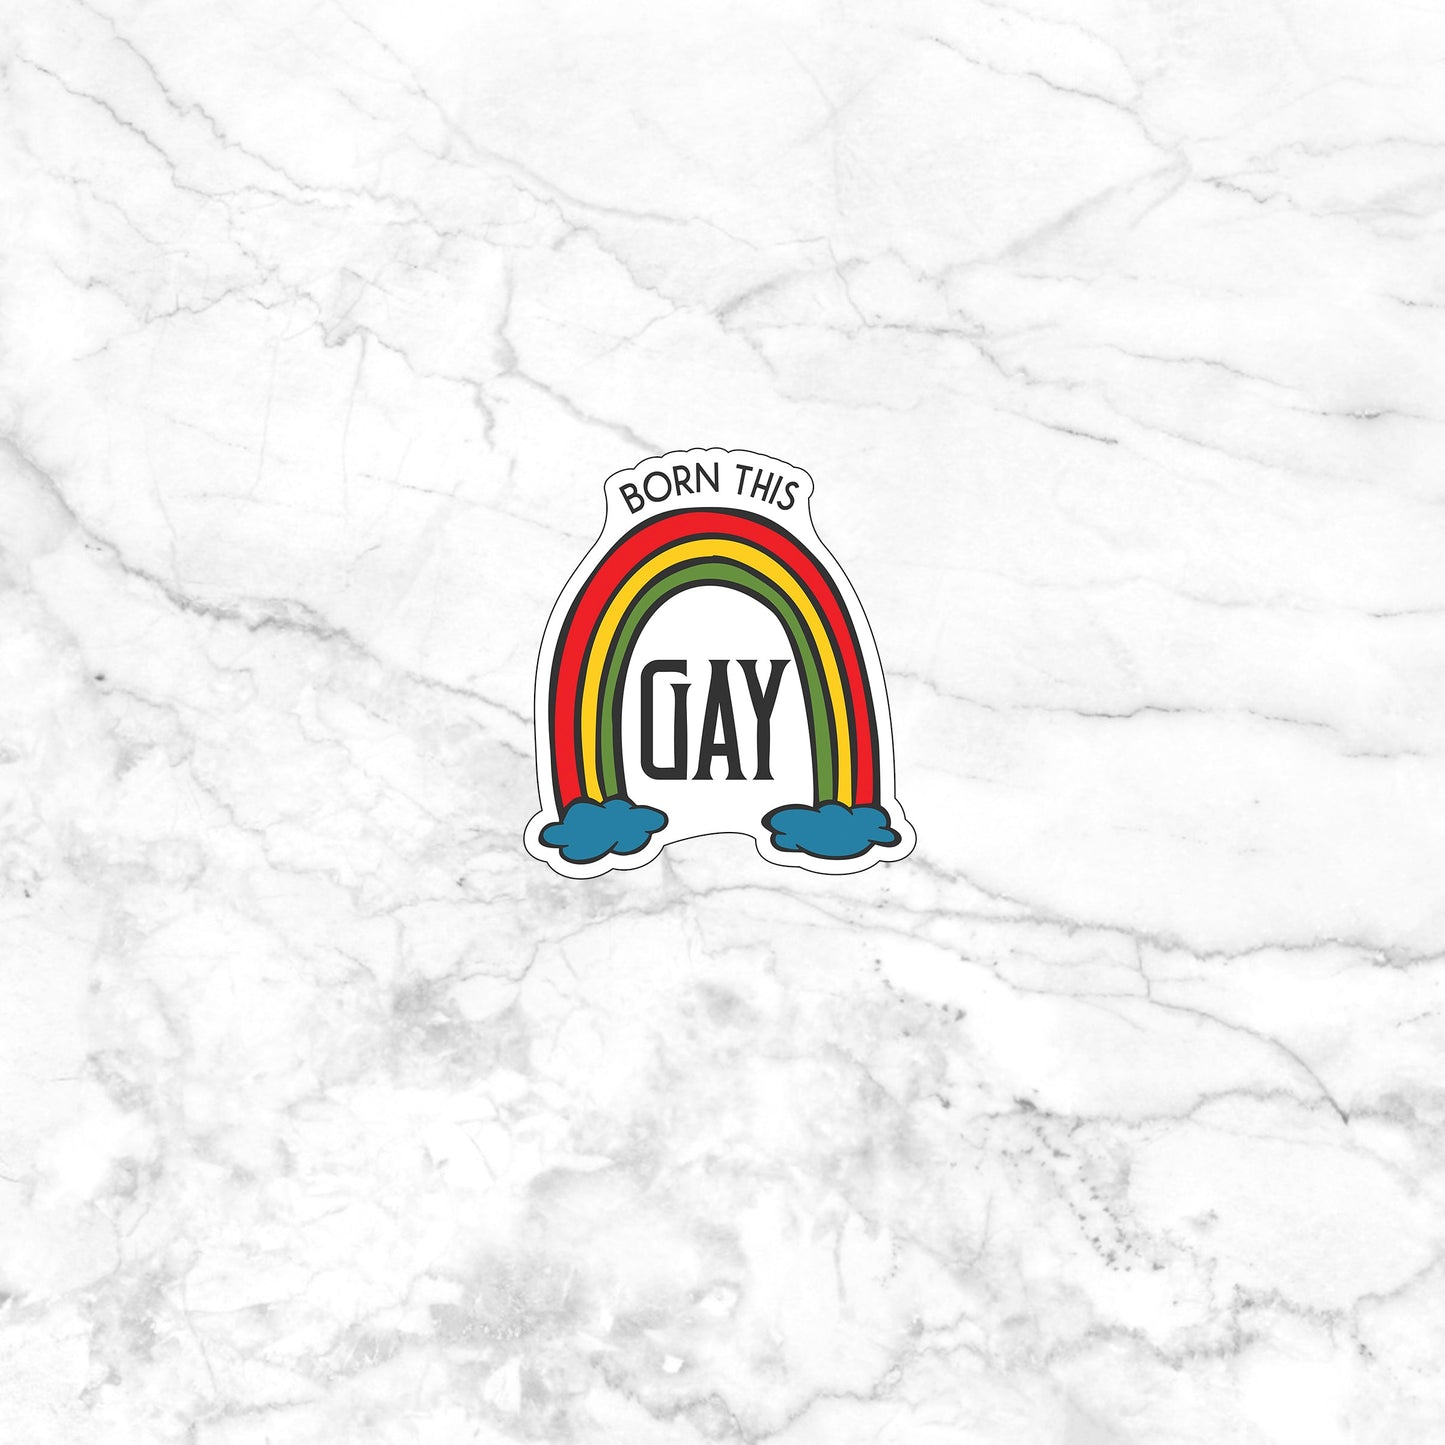 Born This Gay  Sticker,  Vinyl sticker, laptop sticker, Tablet sticker